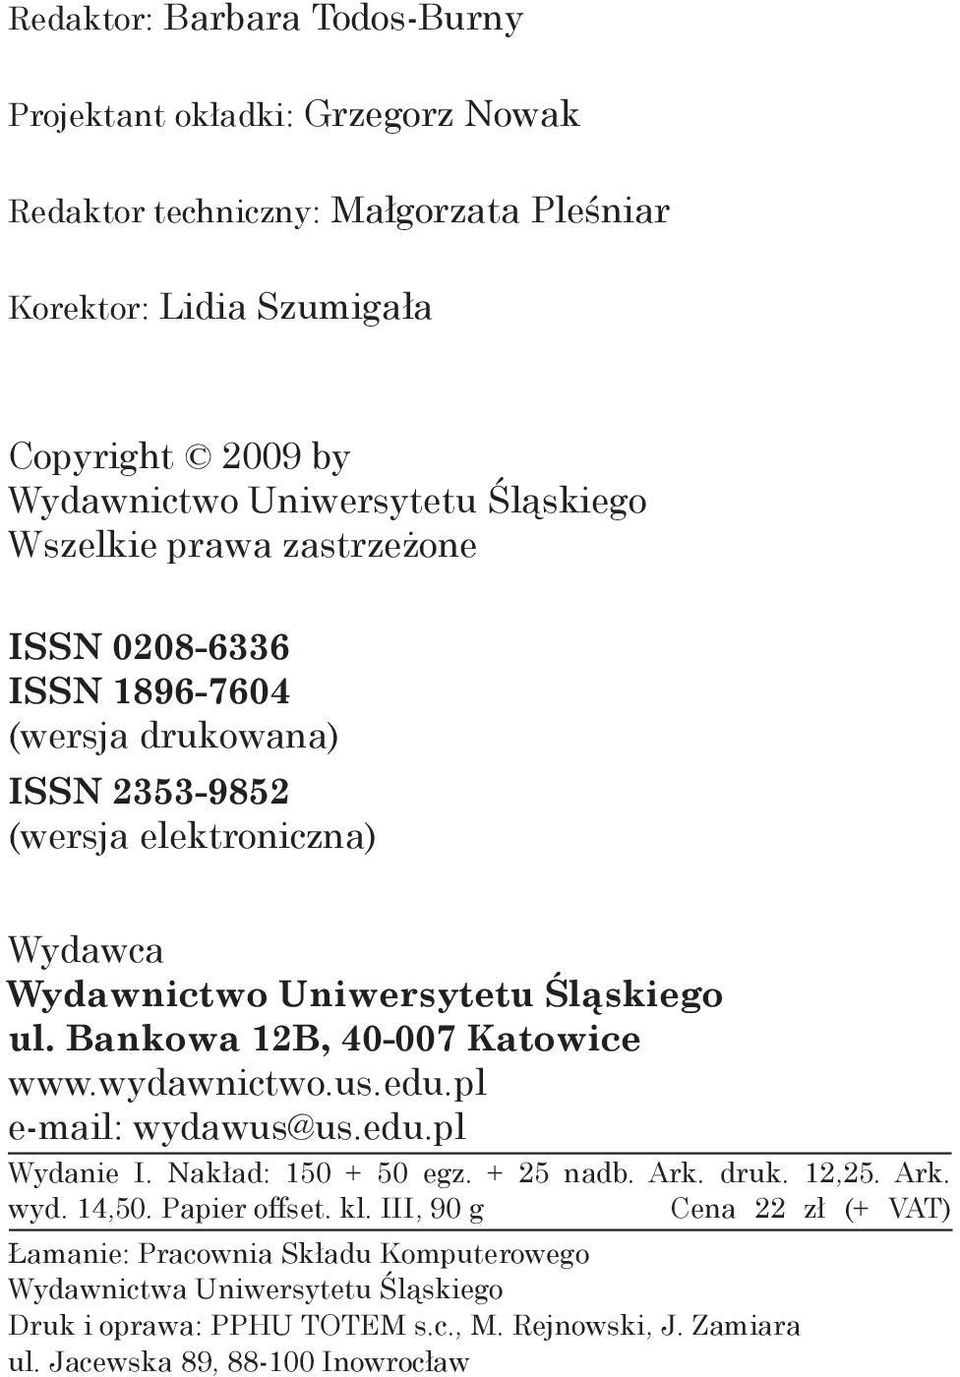 Bankowa 12B, 40-007 Katowice www.wydawnictwo.us.edu.pl e-mail: wydawus@us.edu.pl Wydanie I. Nakład: 150 + 50 egz. + 25 nadb. Ark. druk. 12,25. Ark. wyd. 14,50. Papier offset. kl.